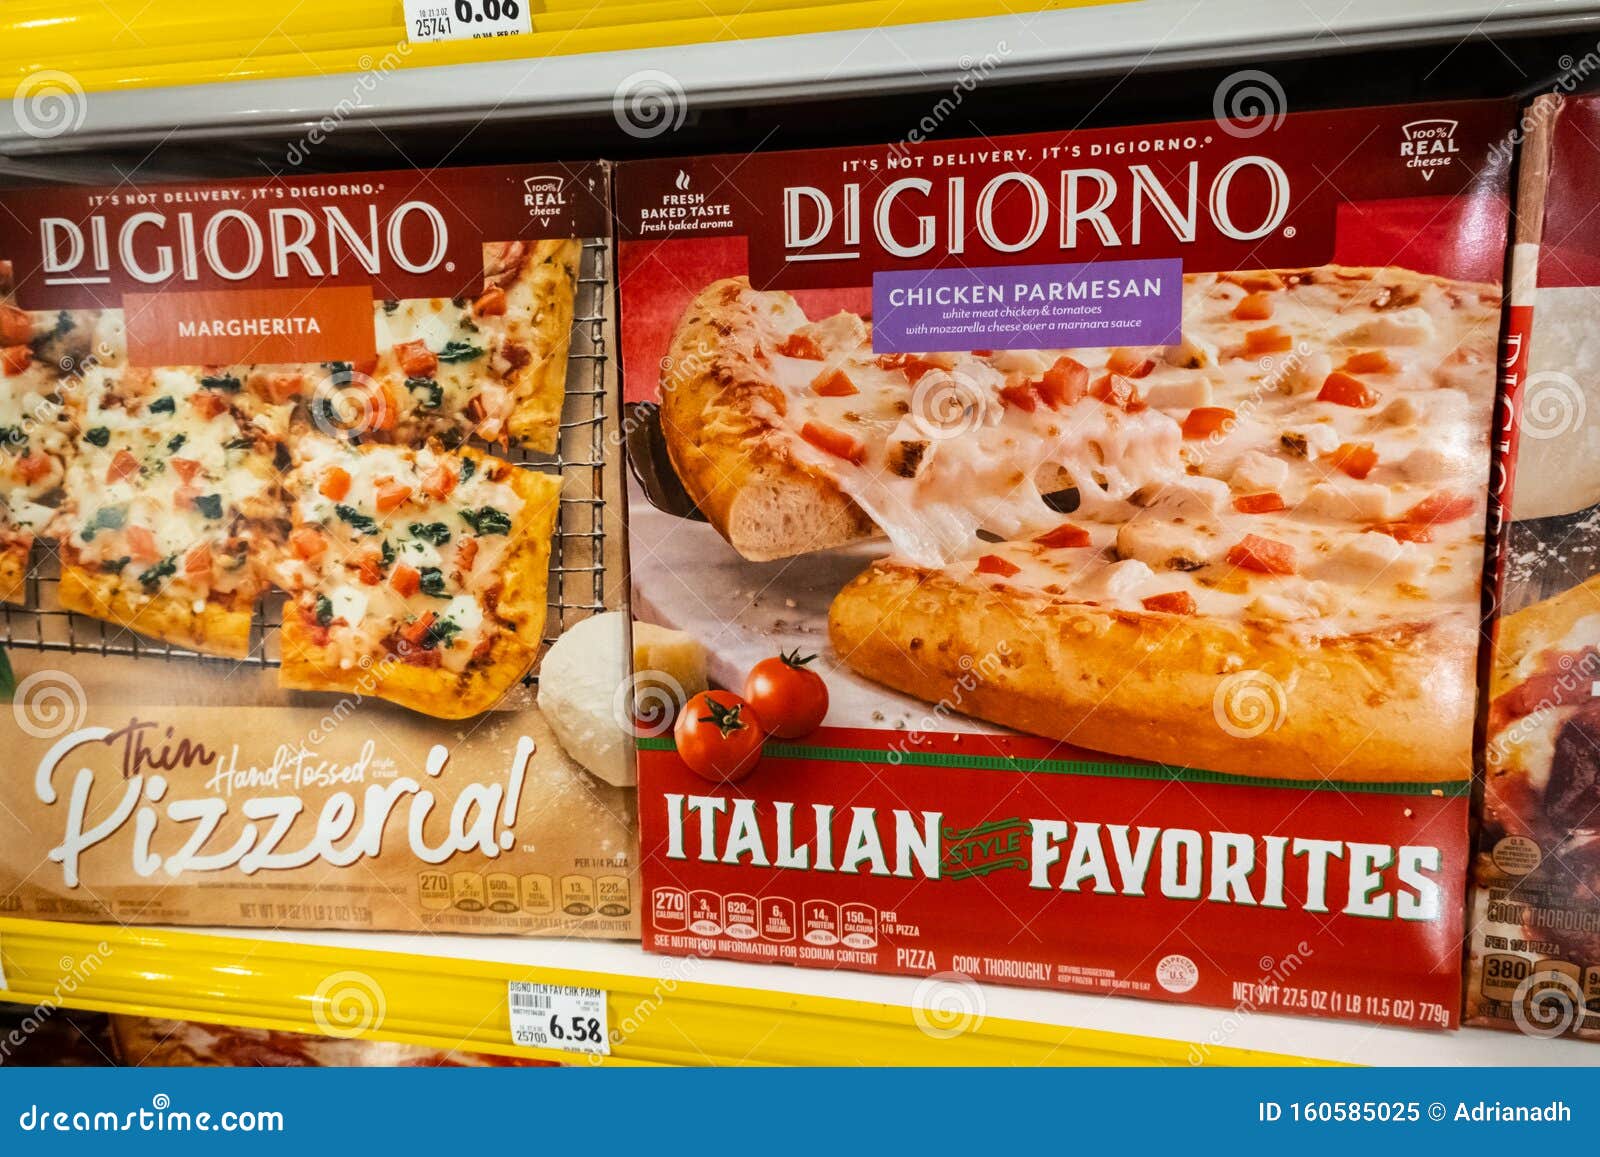 Donatello Frozen Margherita Pizza Editorial Stock Photo - Image of brand,  pizza: 213466778